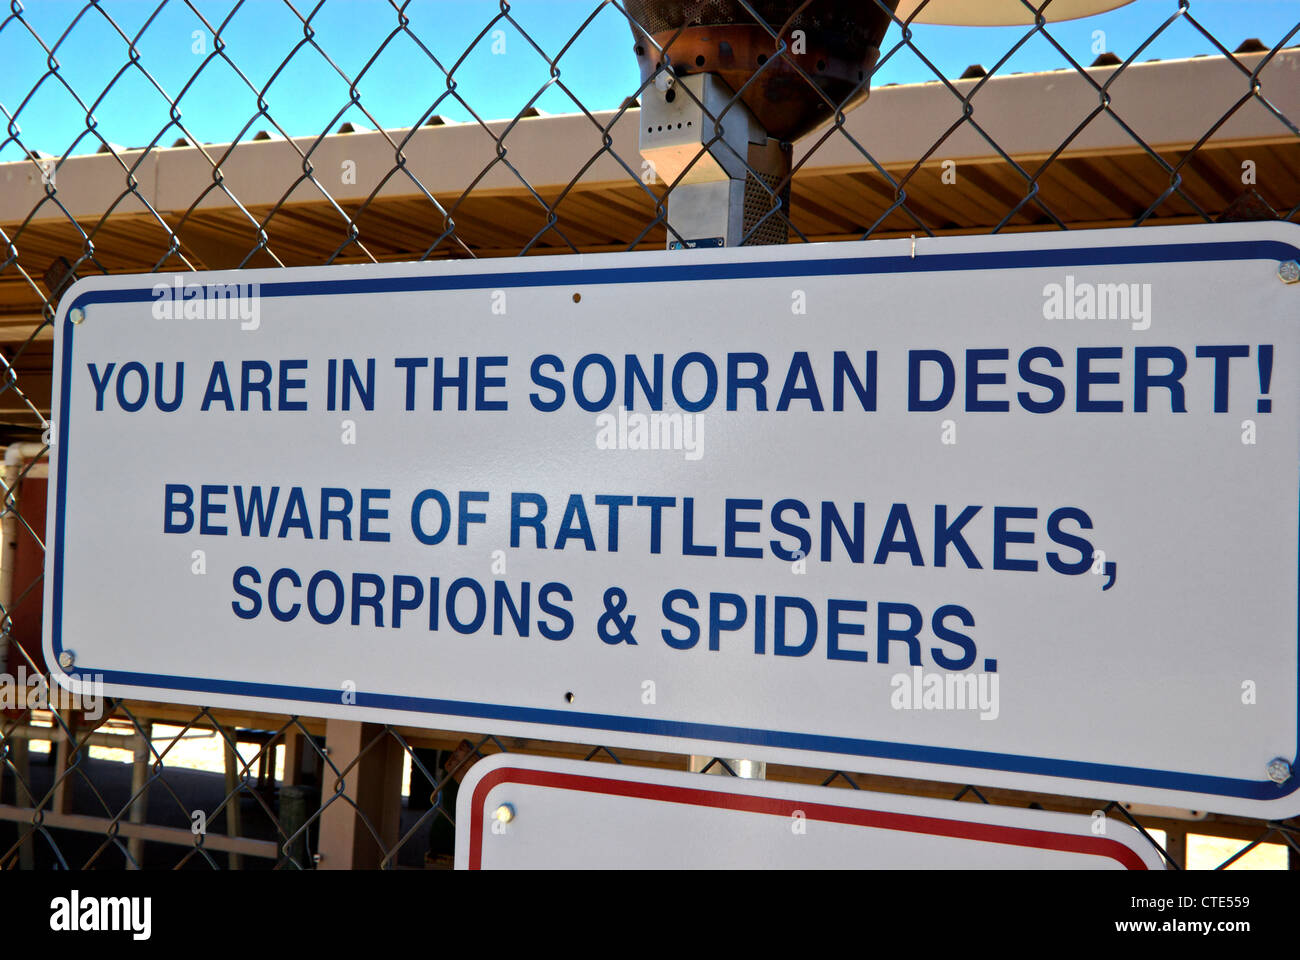 Warnschild über gefährliche Klapperschlangen Skorpione Spinnen Sonoran Wüste Scottsdale AZ Stockfoto